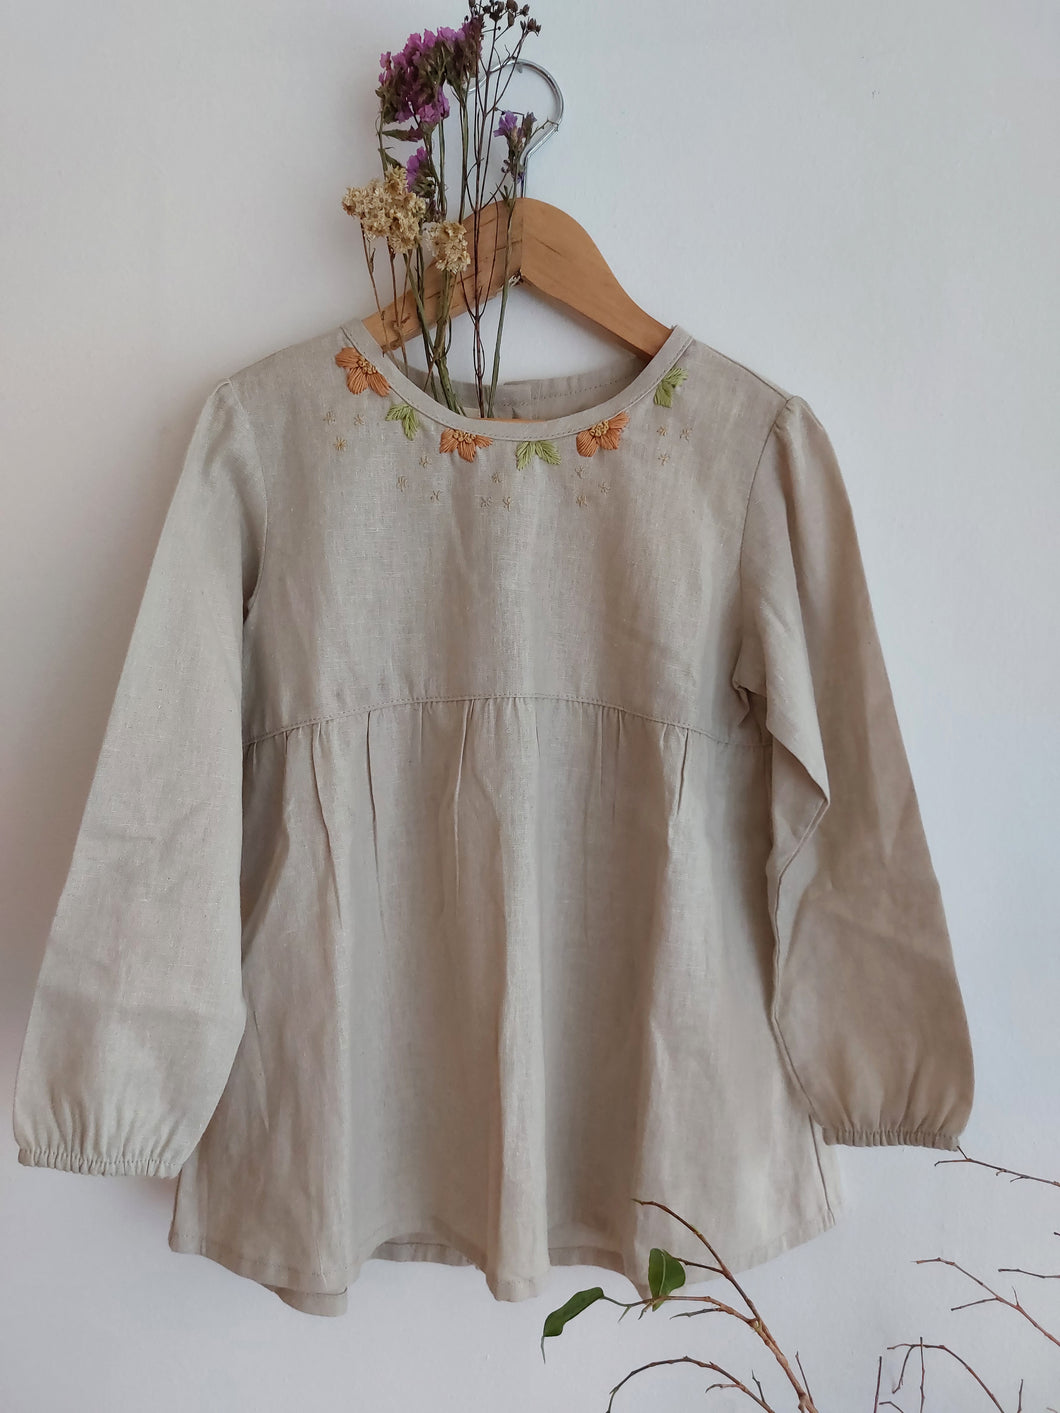 Blusa primavera manga larga bordada arena - Lina Sustentable, ropa Niño Chile, ropa de niño en oferta